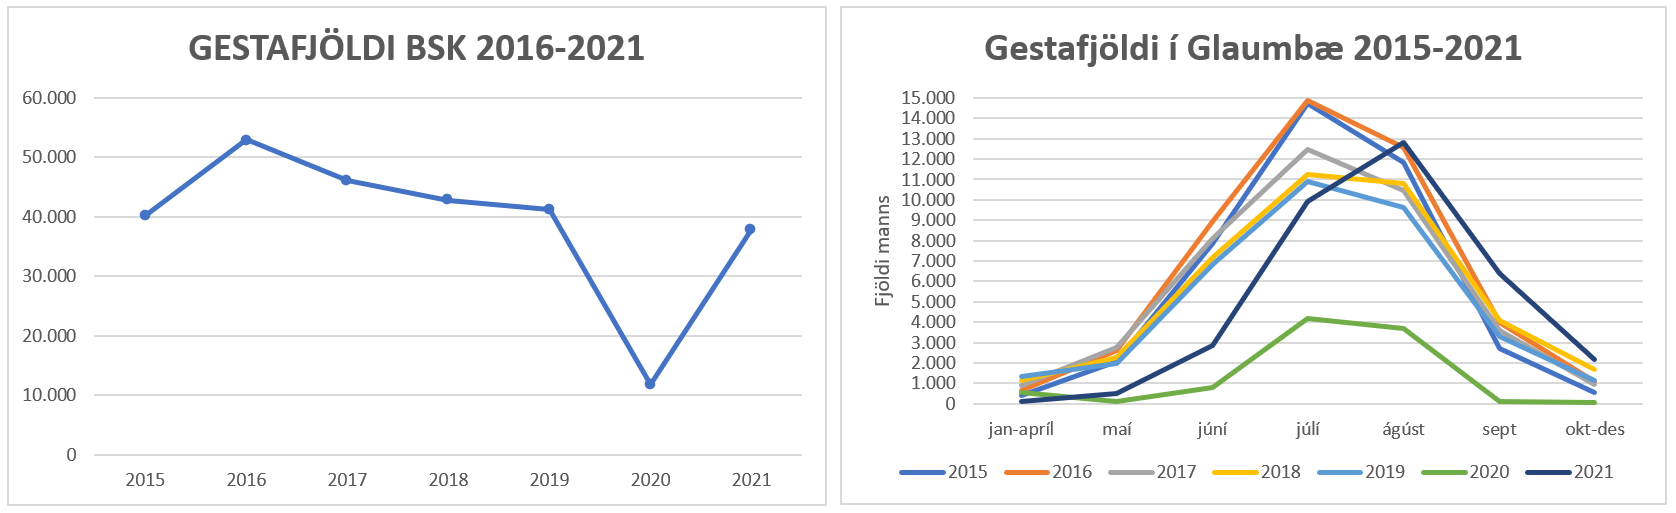 Gestir Byggðasafns Skagfirðinga á árinu 2021. 